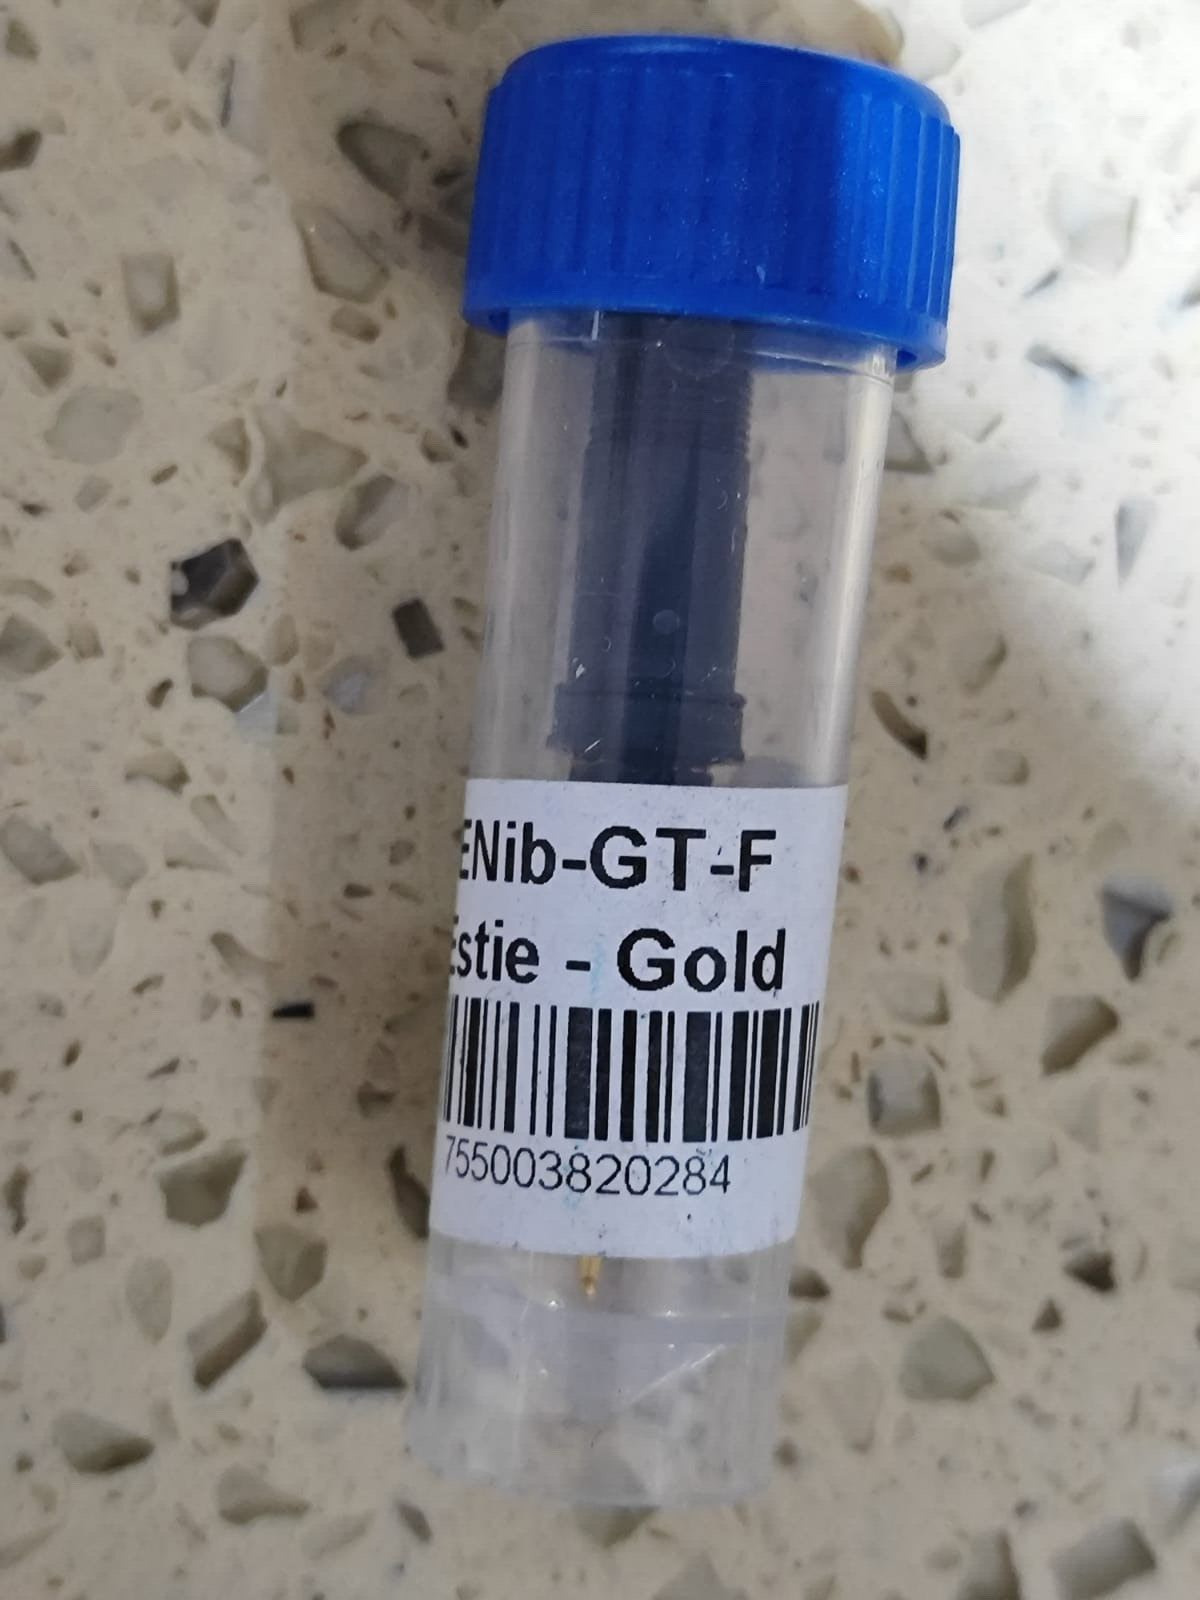 Esterbrook Estie Nib GOLD  - Extra Fine Part NIP  Gold ENIB-GT-F NOS